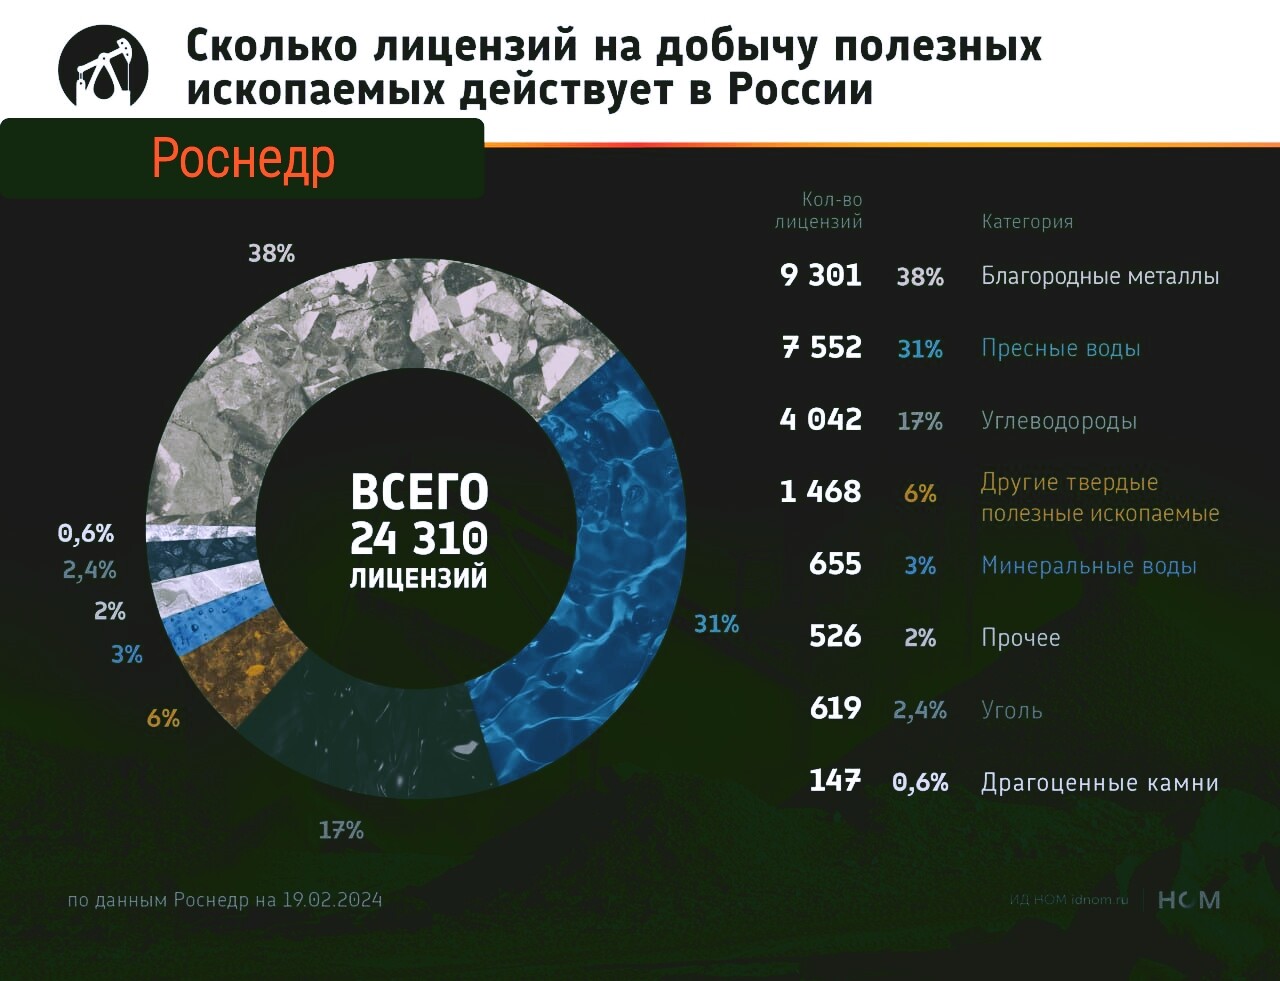 Количество лицензий на добычу полезных ископаемых в РФ